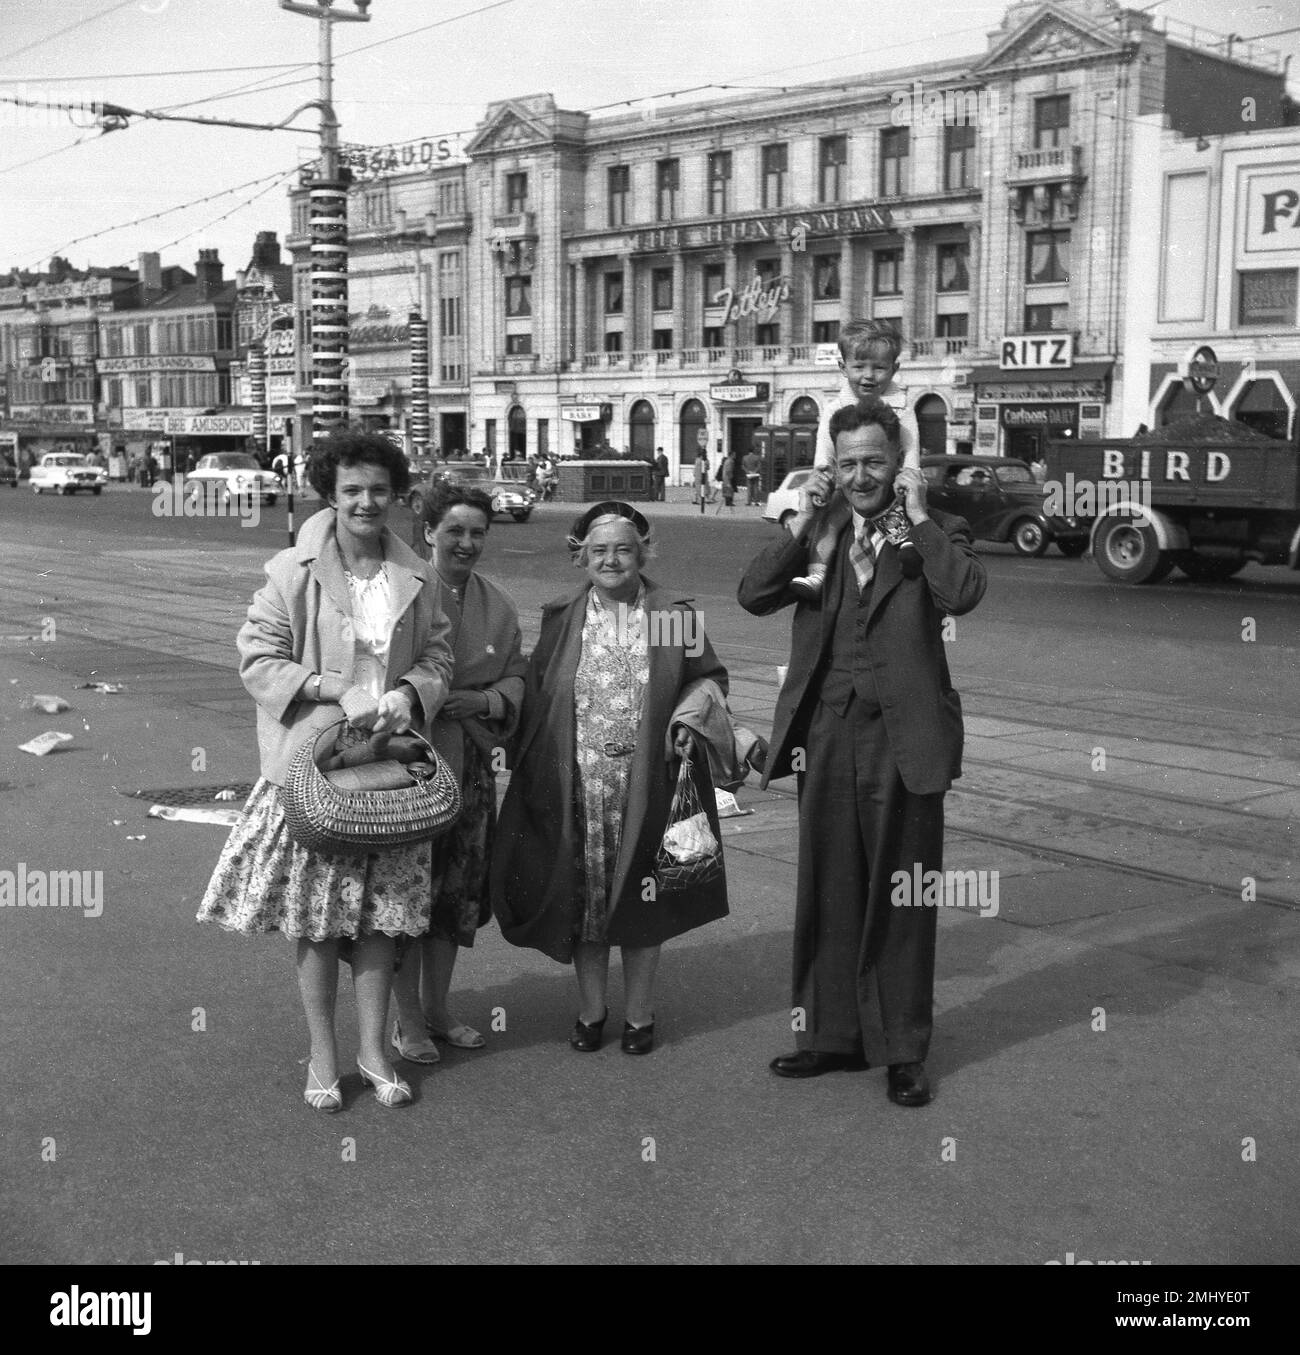 Années 1950, historique, une famille ouvrière debout pour une photo sur la promenade de Blackpool, Angleterre, Royaume-Uni. Dans la rue derrière, sur la Royal Princes Parade, les voitures de l'époque. Le Huntsman, Ritz, Tassauds (Waxworks) sont des noms sur les bâtiments. La famille est habillée formellement, comme les gens sont en vacances sur cette époque, le monsieur, avec un petit garçon sur ses épaules, porte un sit & cravate en trois pièces, et les femmes en robes de fleurs et manteaux longs. Banque D'Images